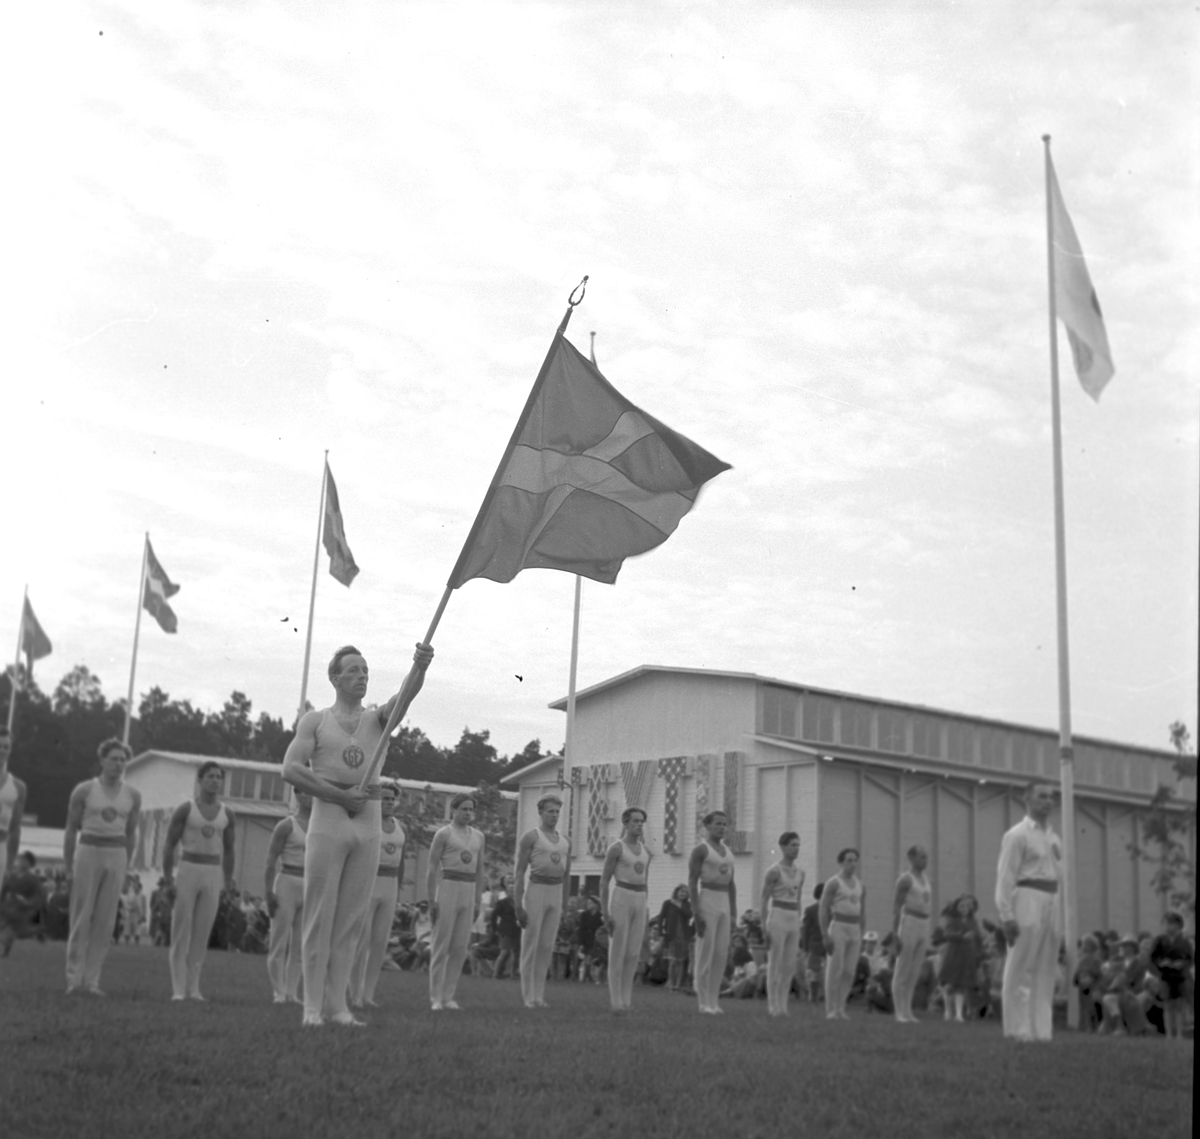 Gävleutställningen 1946
arrangerades 21 juni - 4 augusti. En utställning med anledning av Gävle stads 500-årsjubileum. På 350.000 kv.m. visade 530 utställare sina produkter. Utställningen besöktes av ca 760.000 personer.

Gymnastik